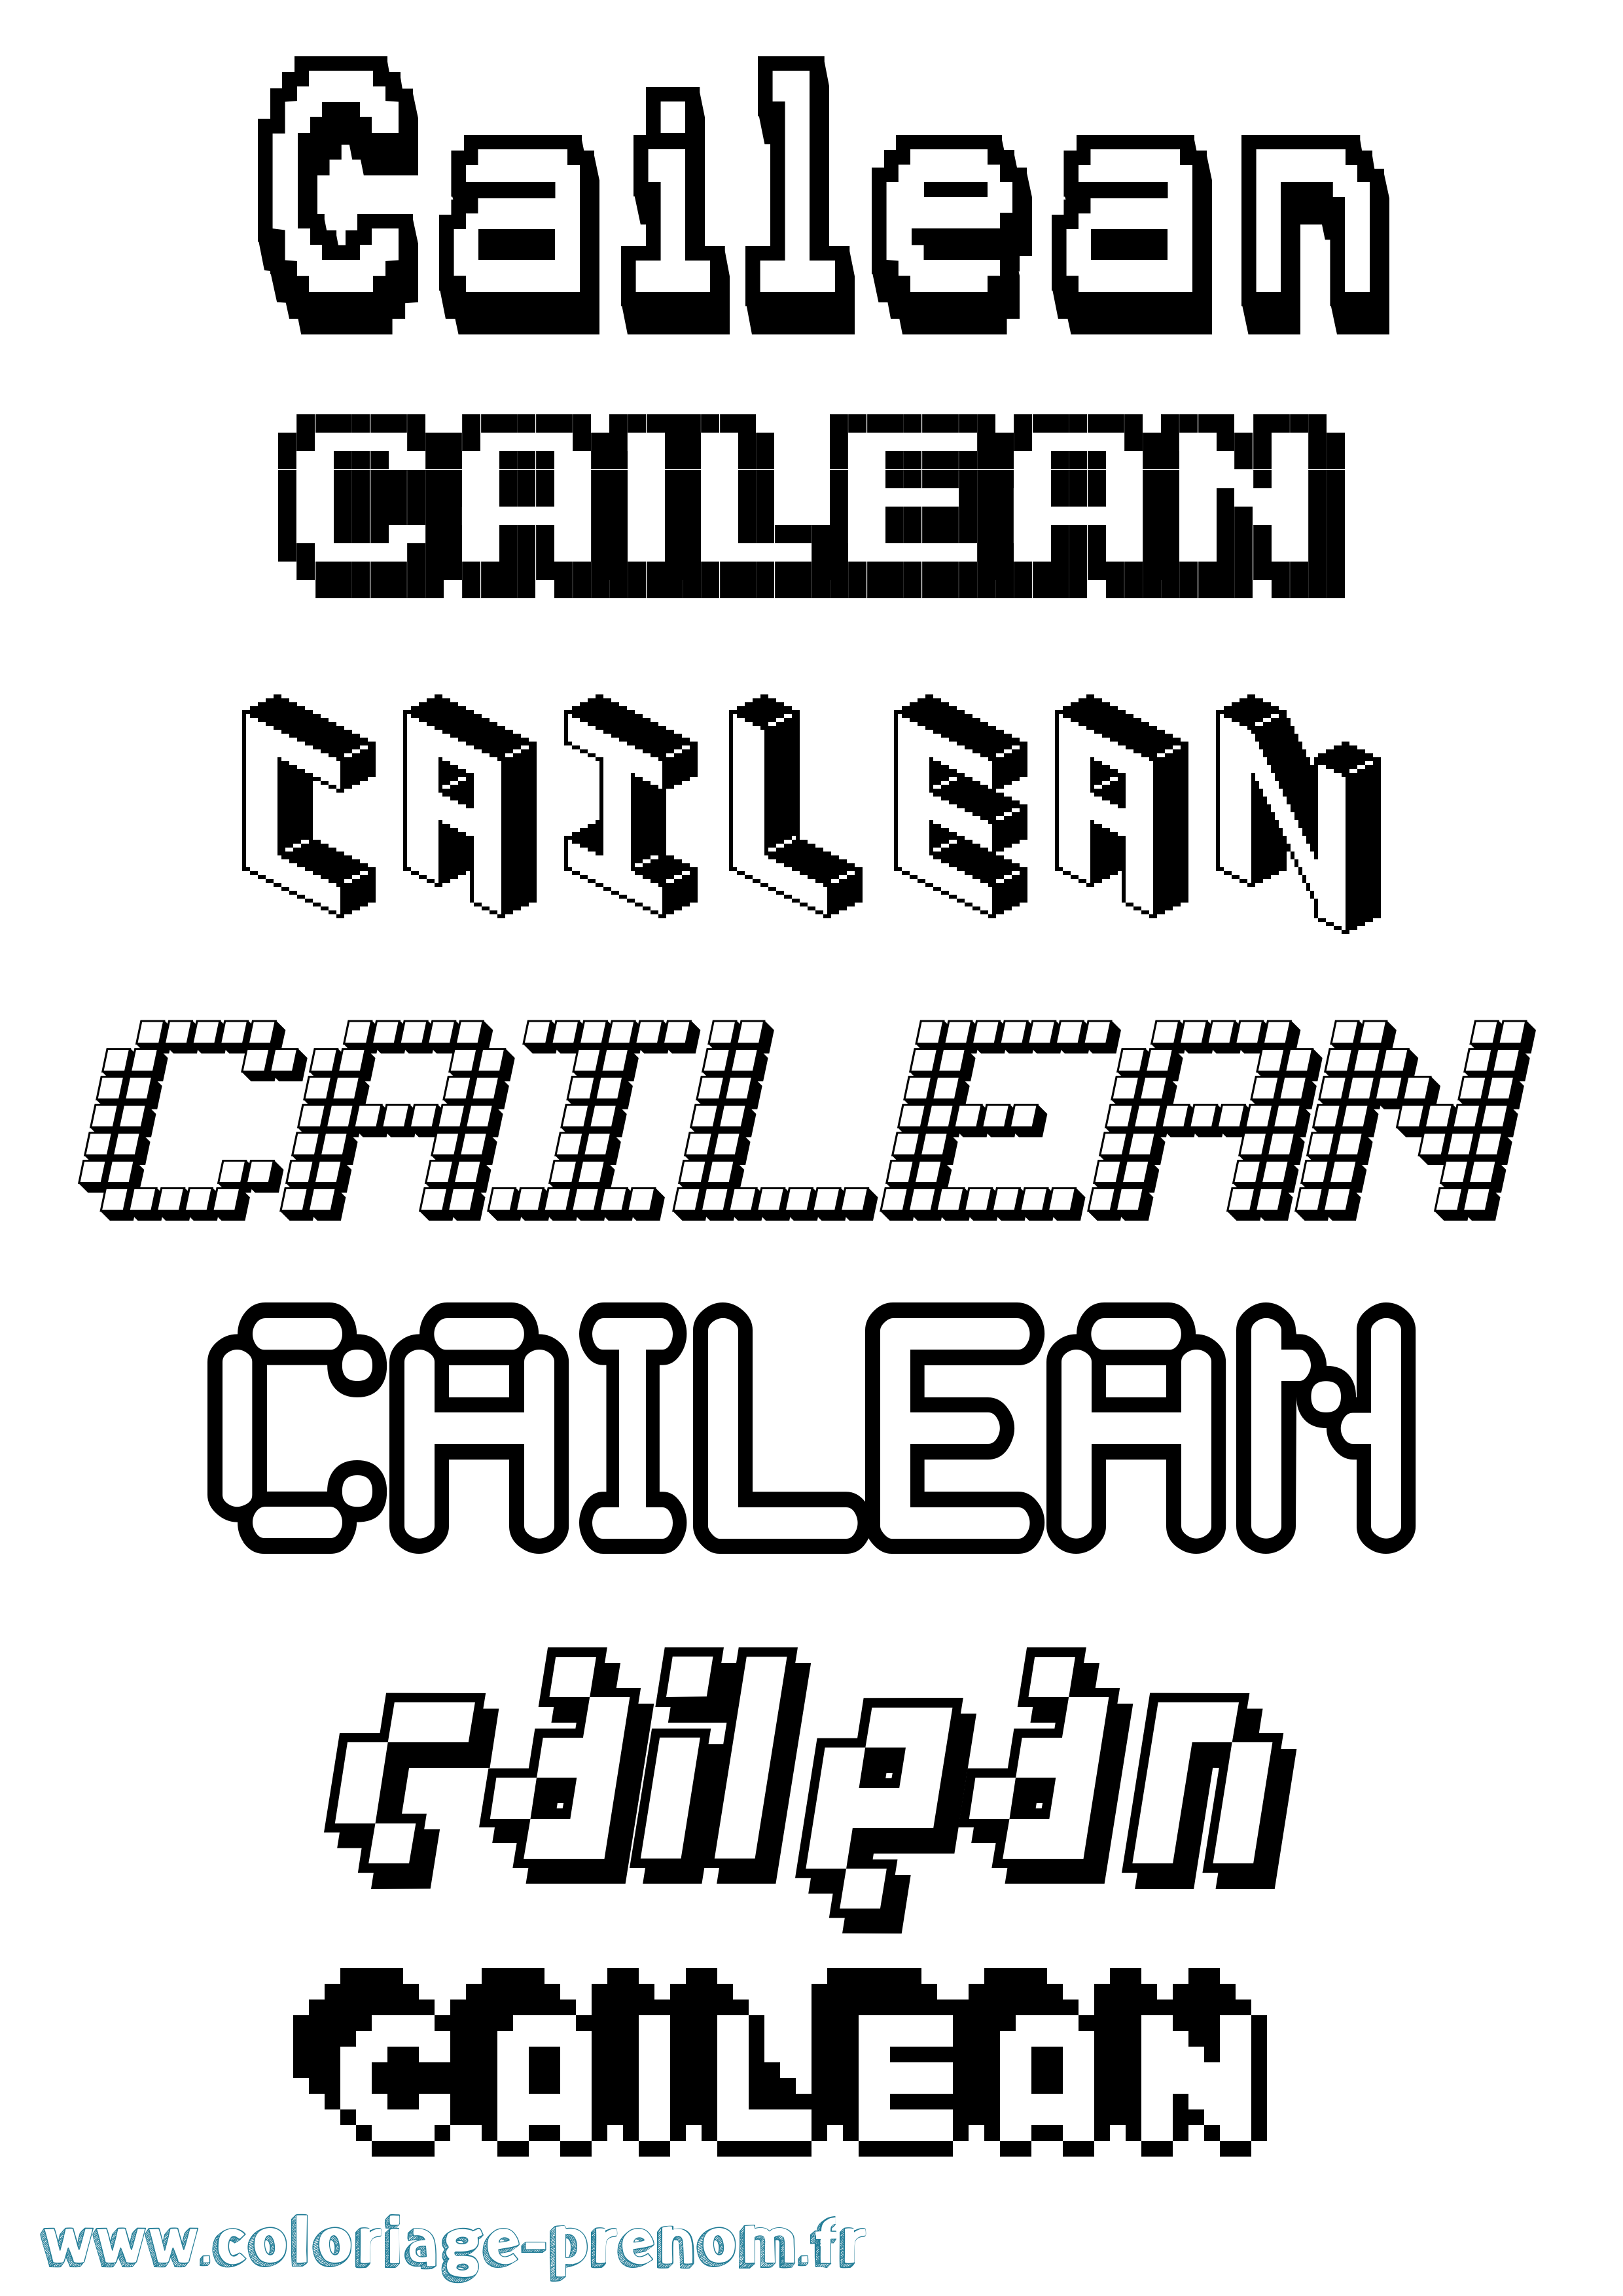 Coloriage prénom Cailean Pixel